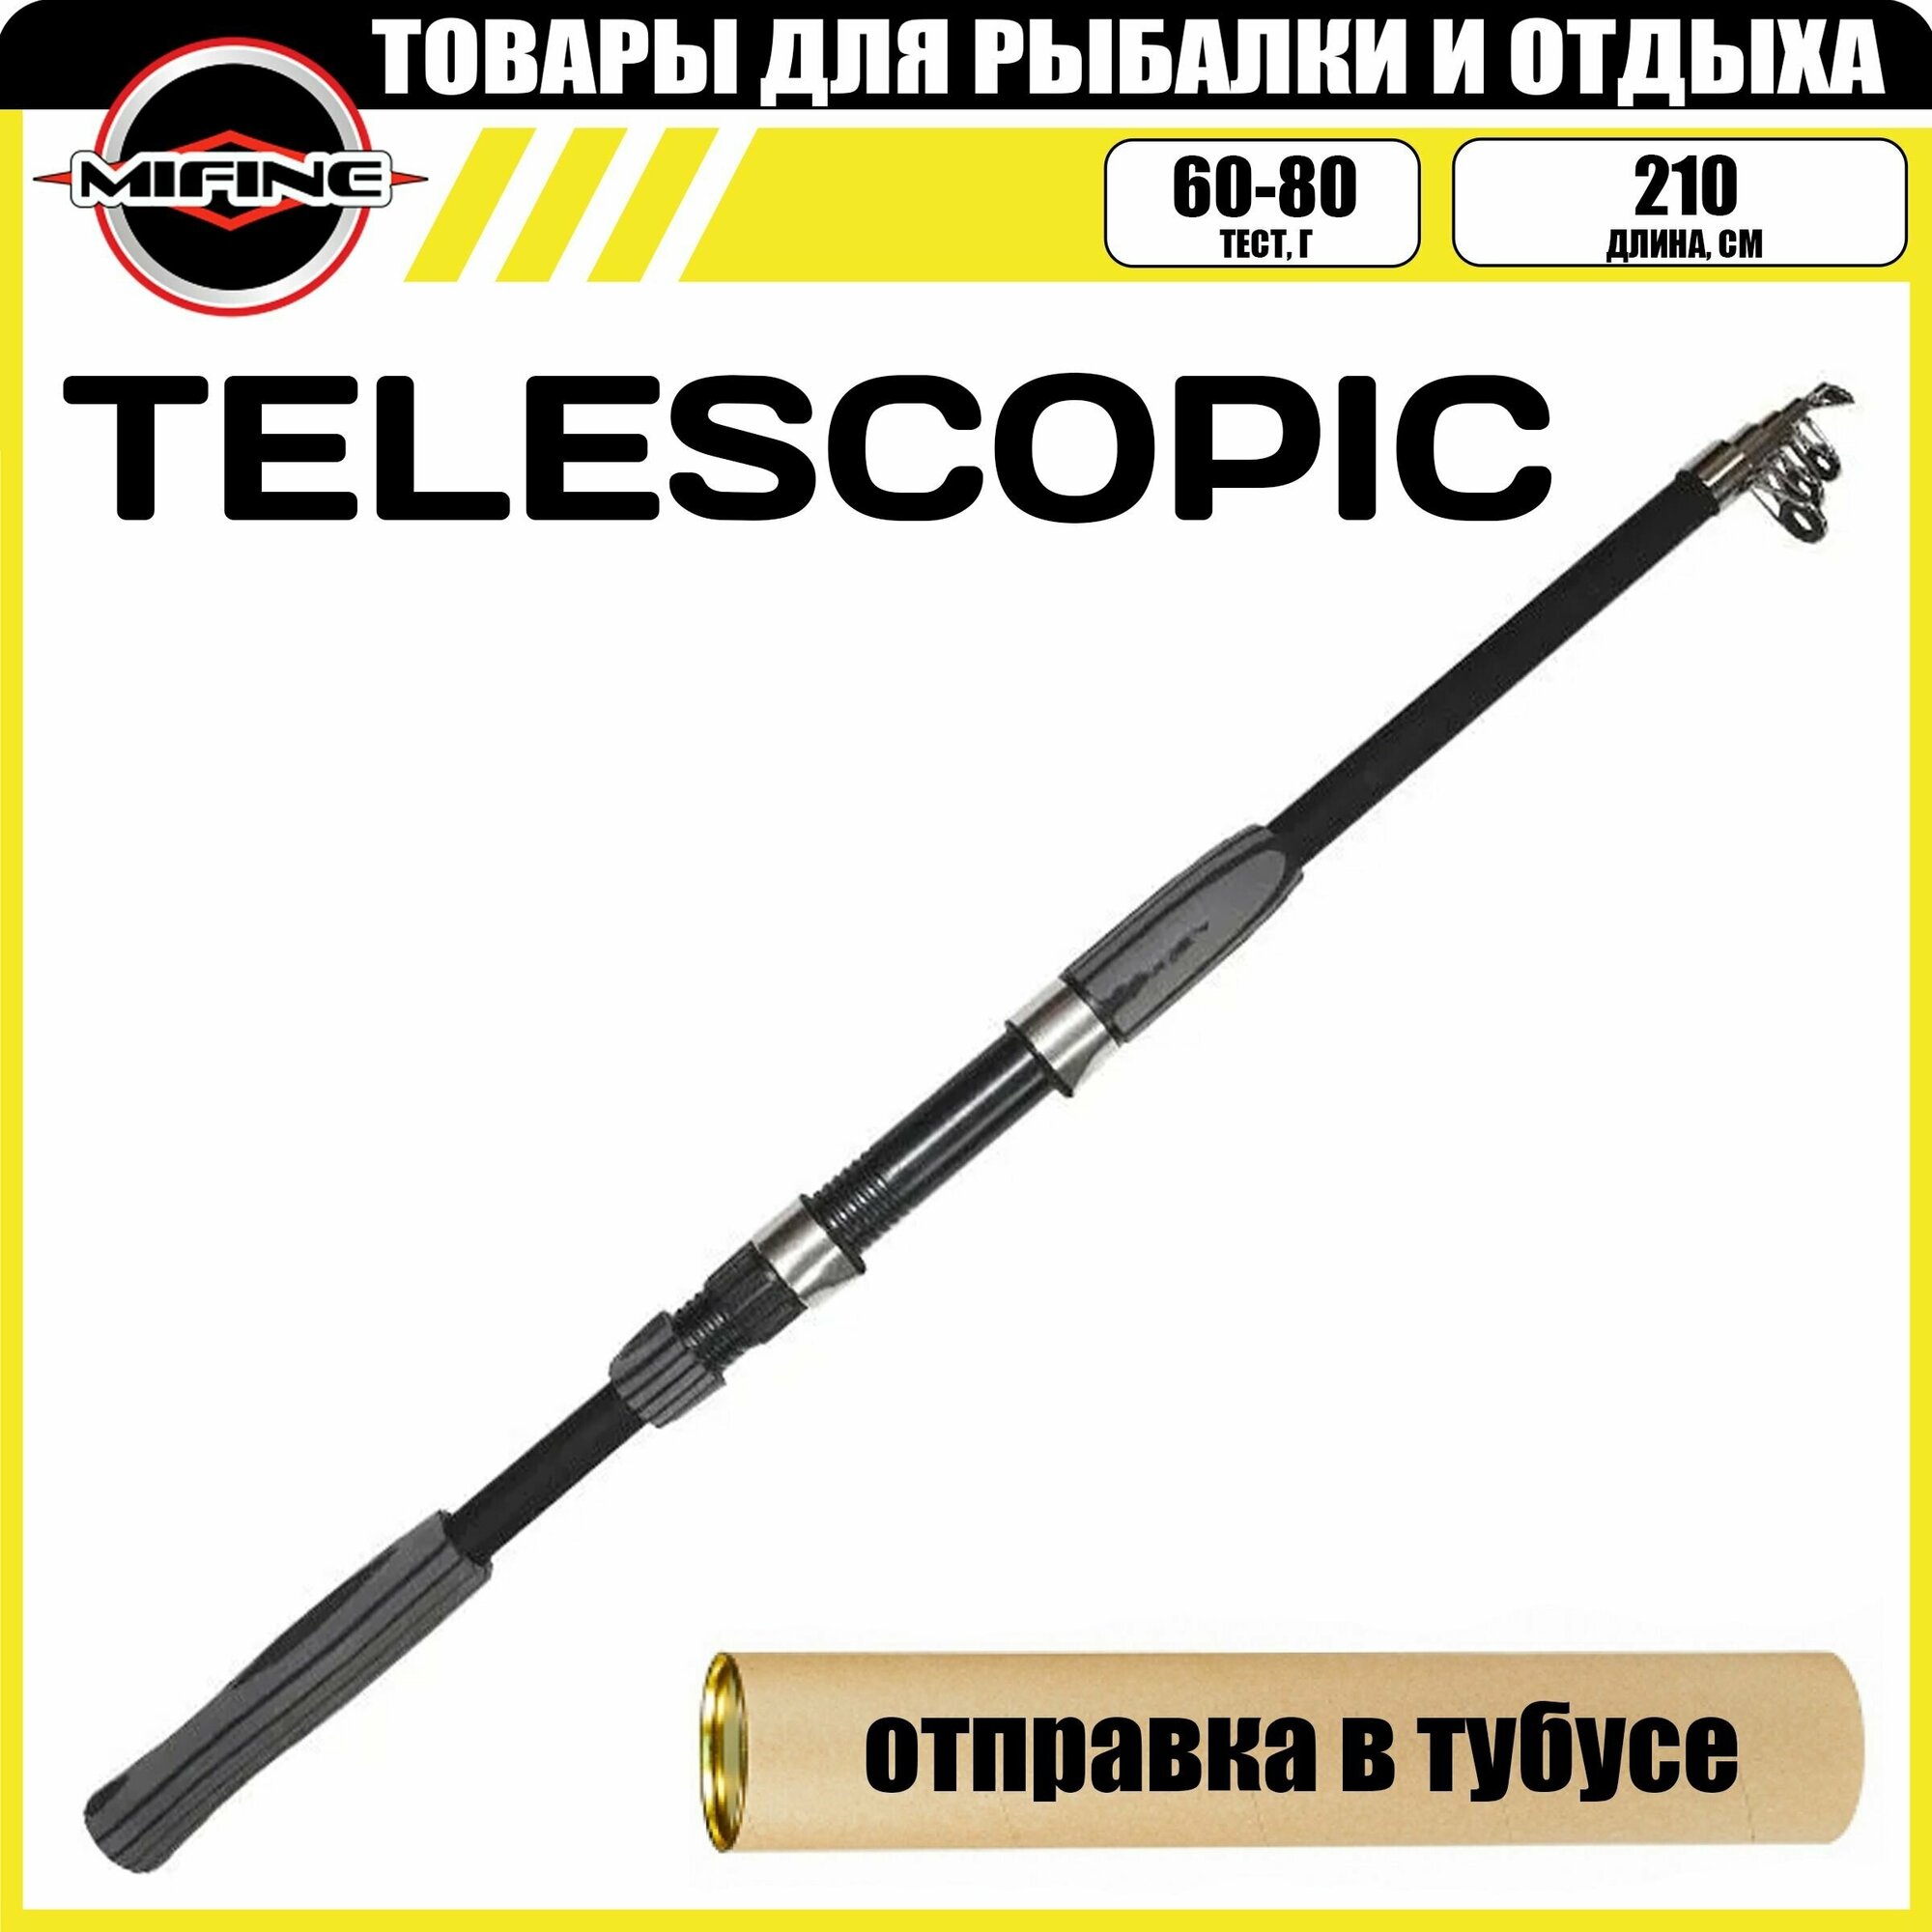 Спиннинг MIFINE TELESCOPIC телескопический 2.1м (60-80гр) рыболовный удилище для рыбалки